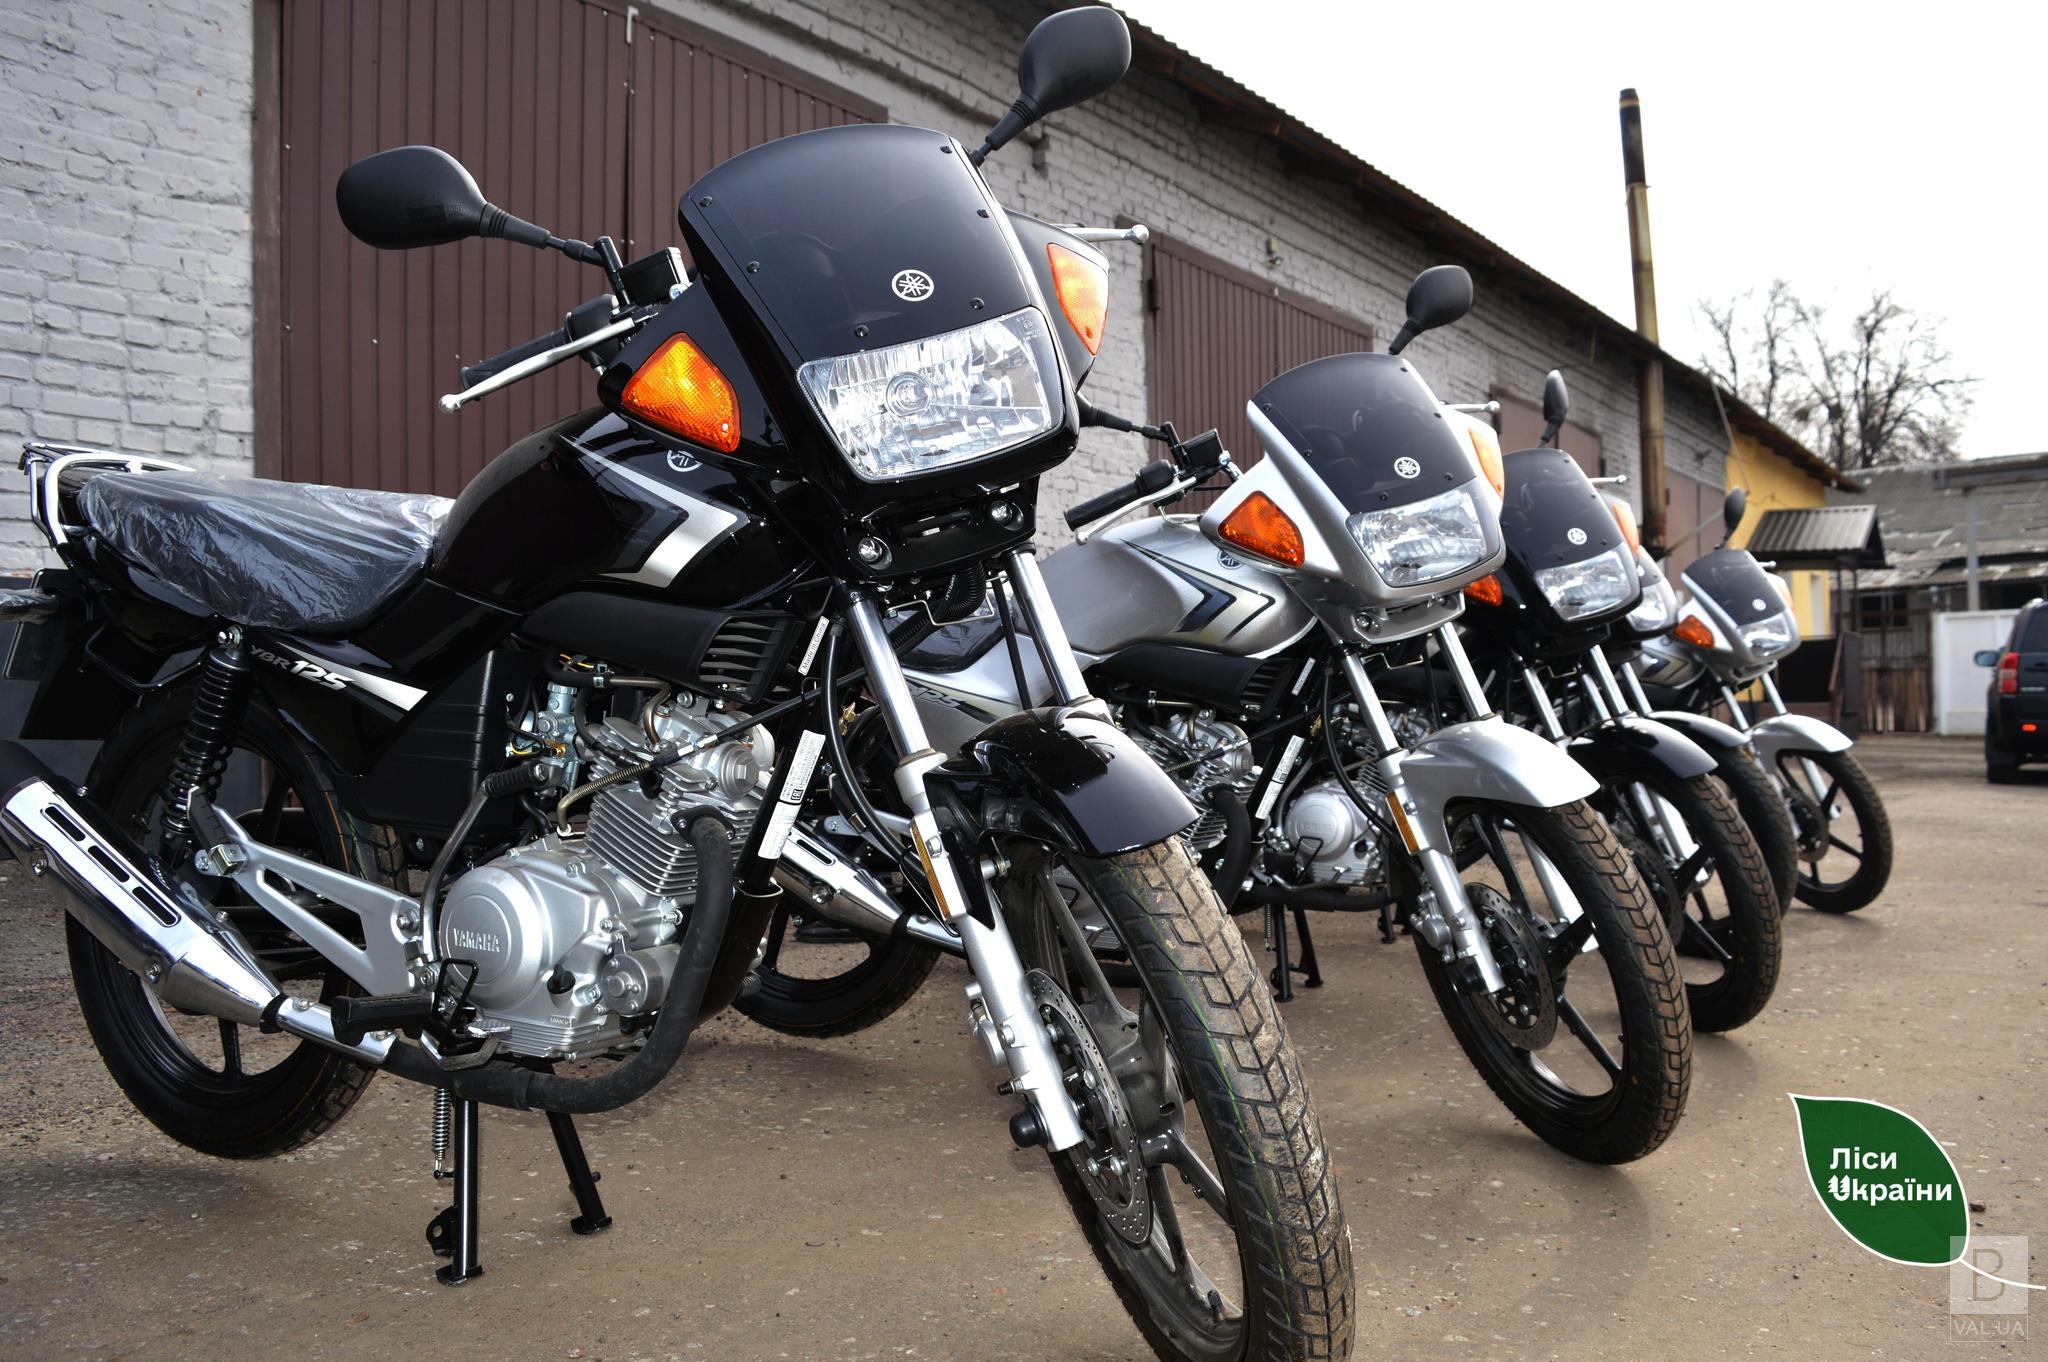 Працівники лісової охорони Чернігівщини отримали 5 мотоциклів для патрулювання лісів